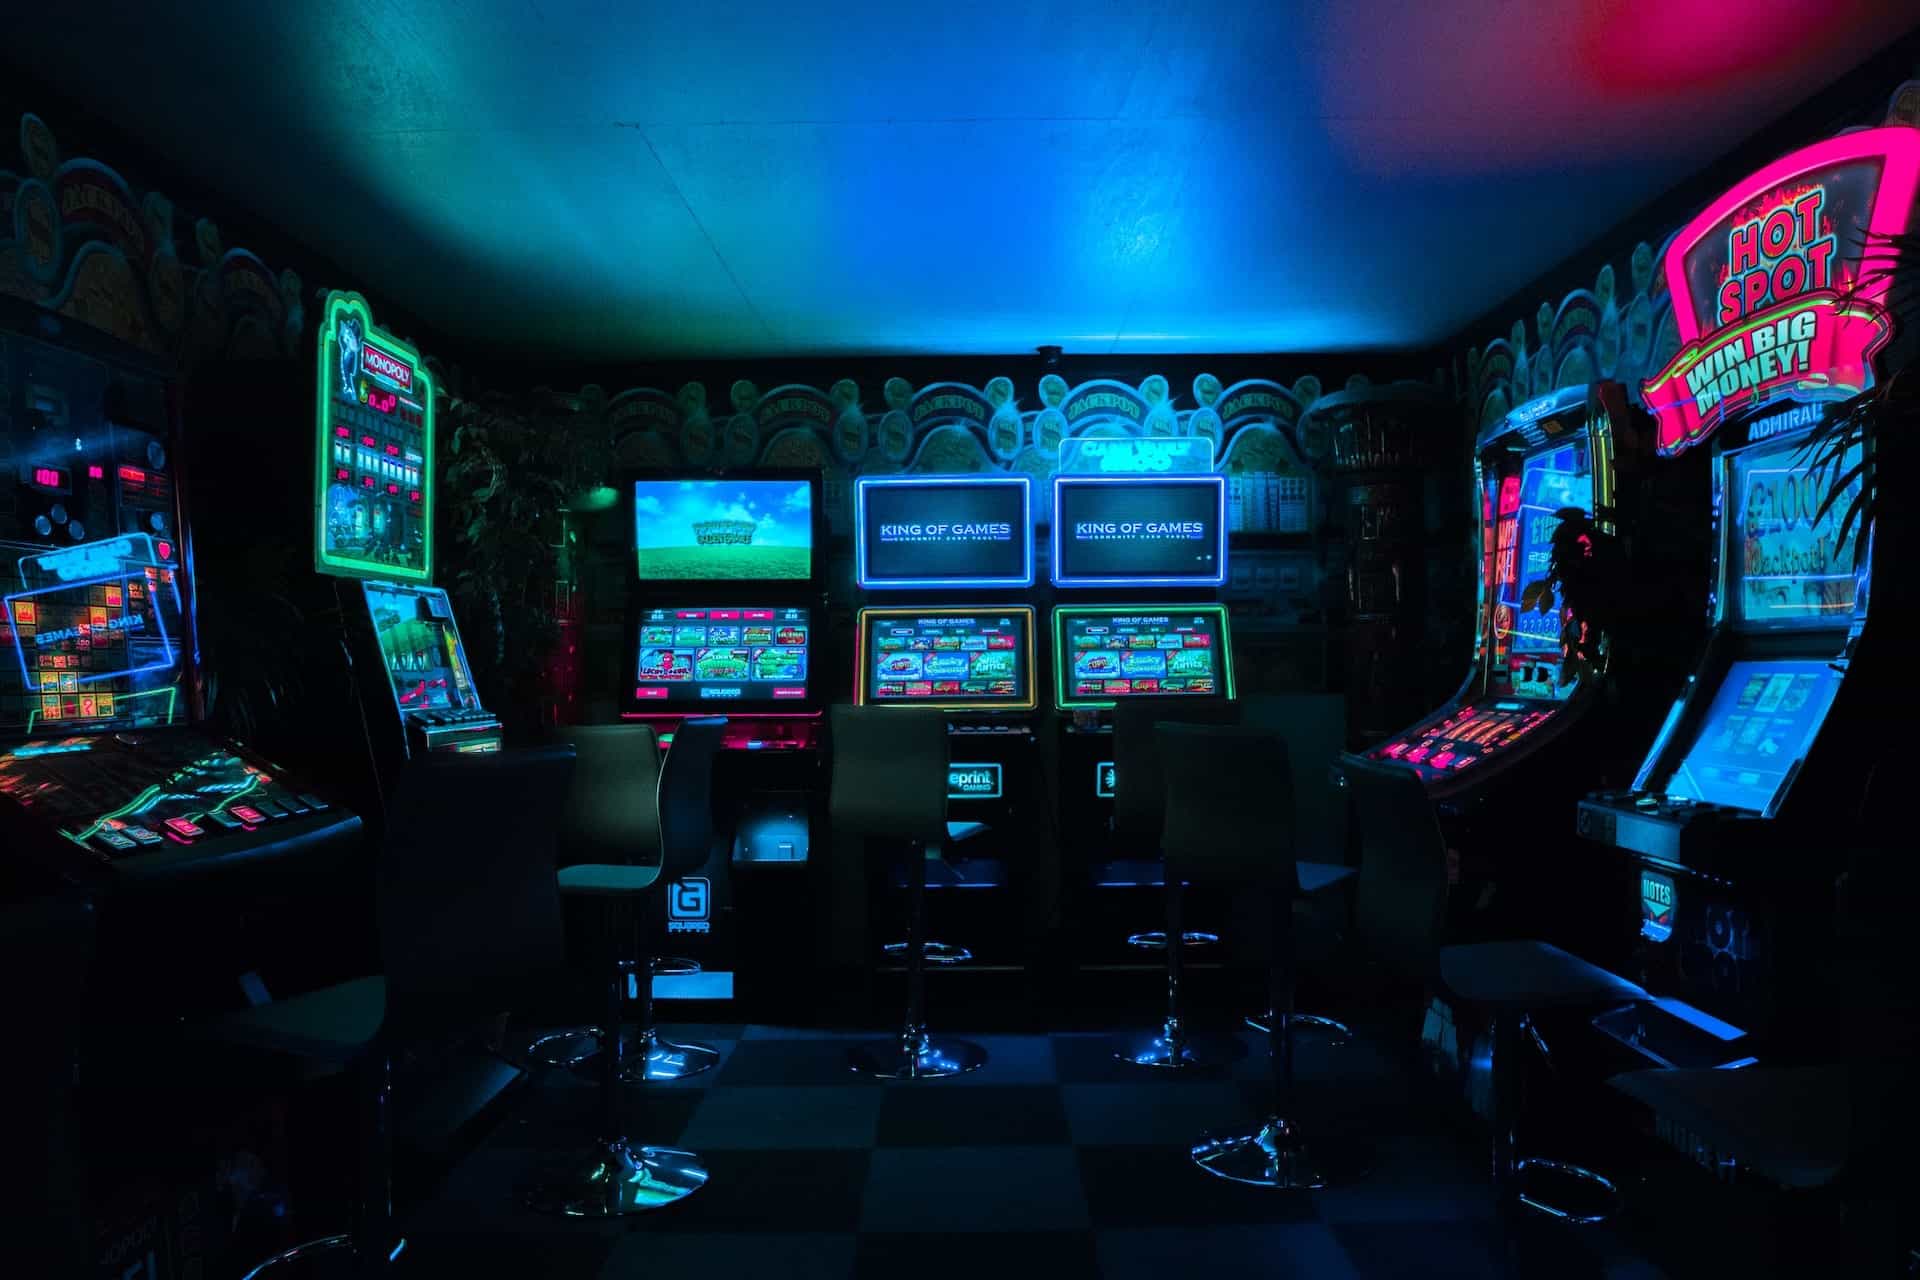 Mehrere Spielautomaten in einem schwach beleuchteten Raum